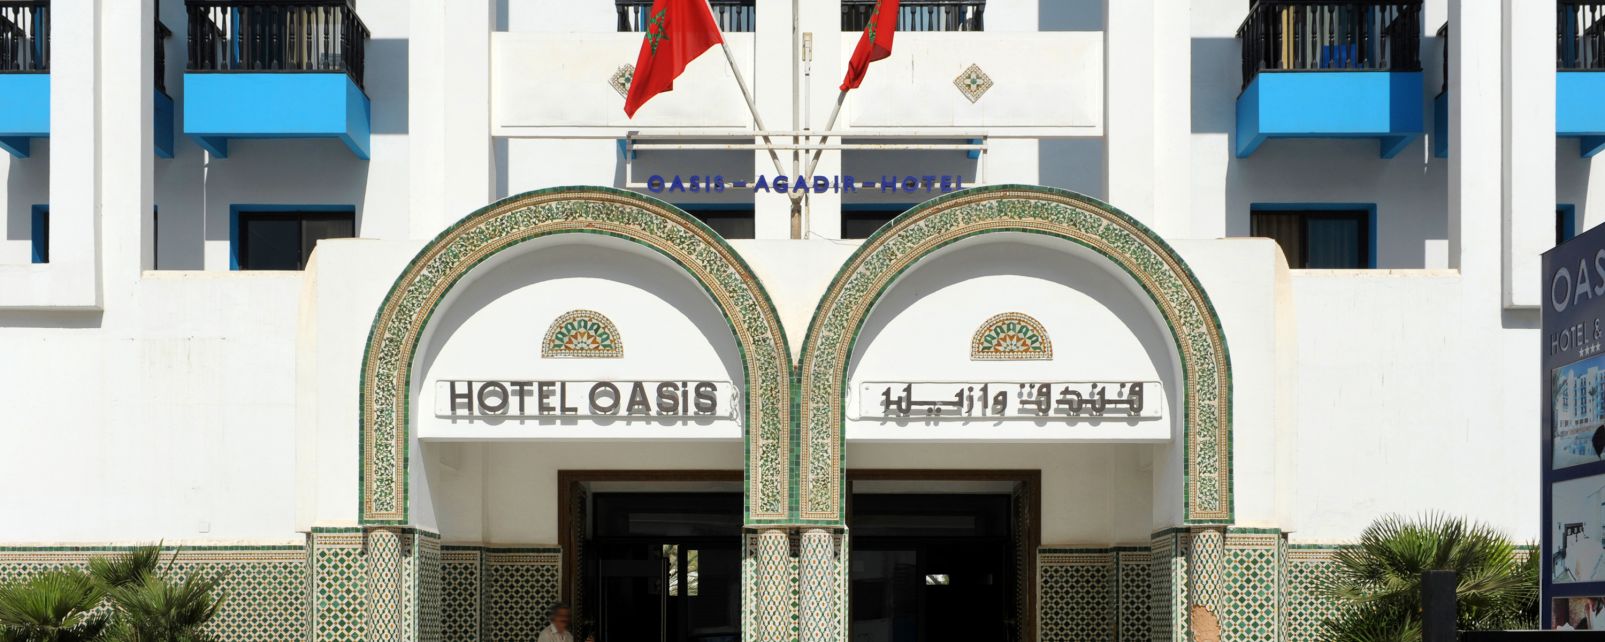 Hotel Hôtel Oasis